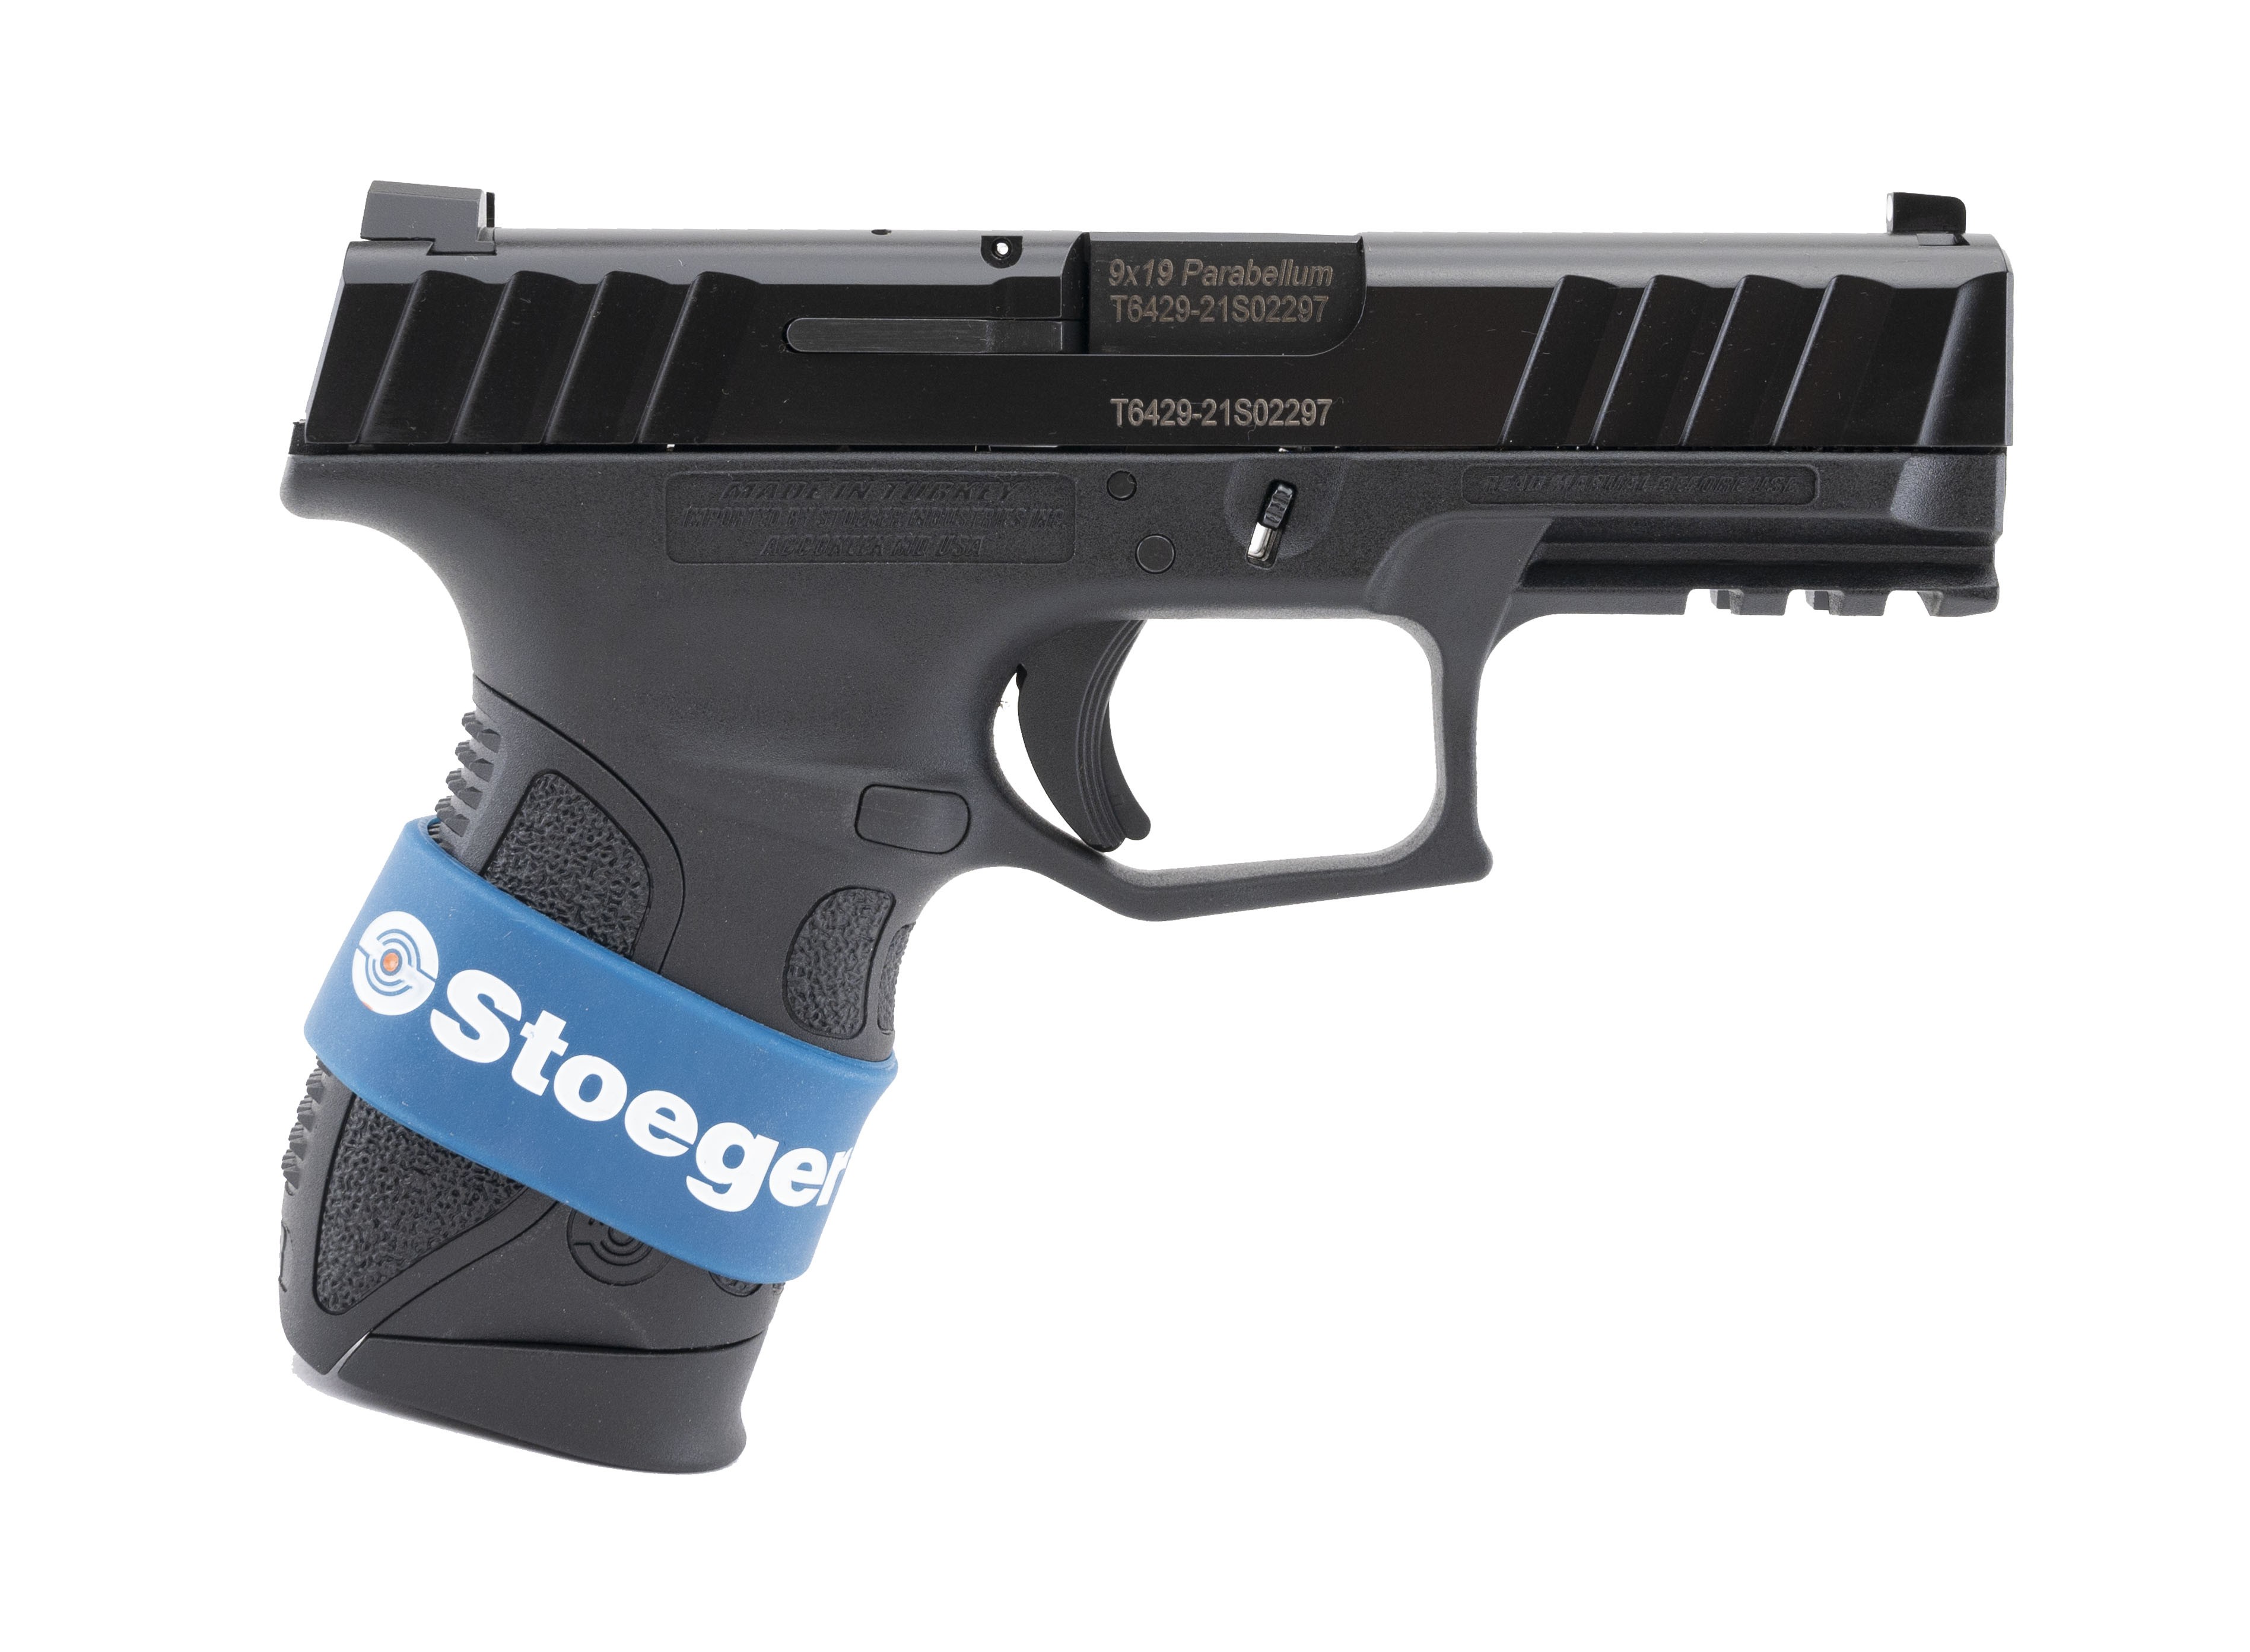 stoeger-str-9c-pistol-9mm-ngz14-new